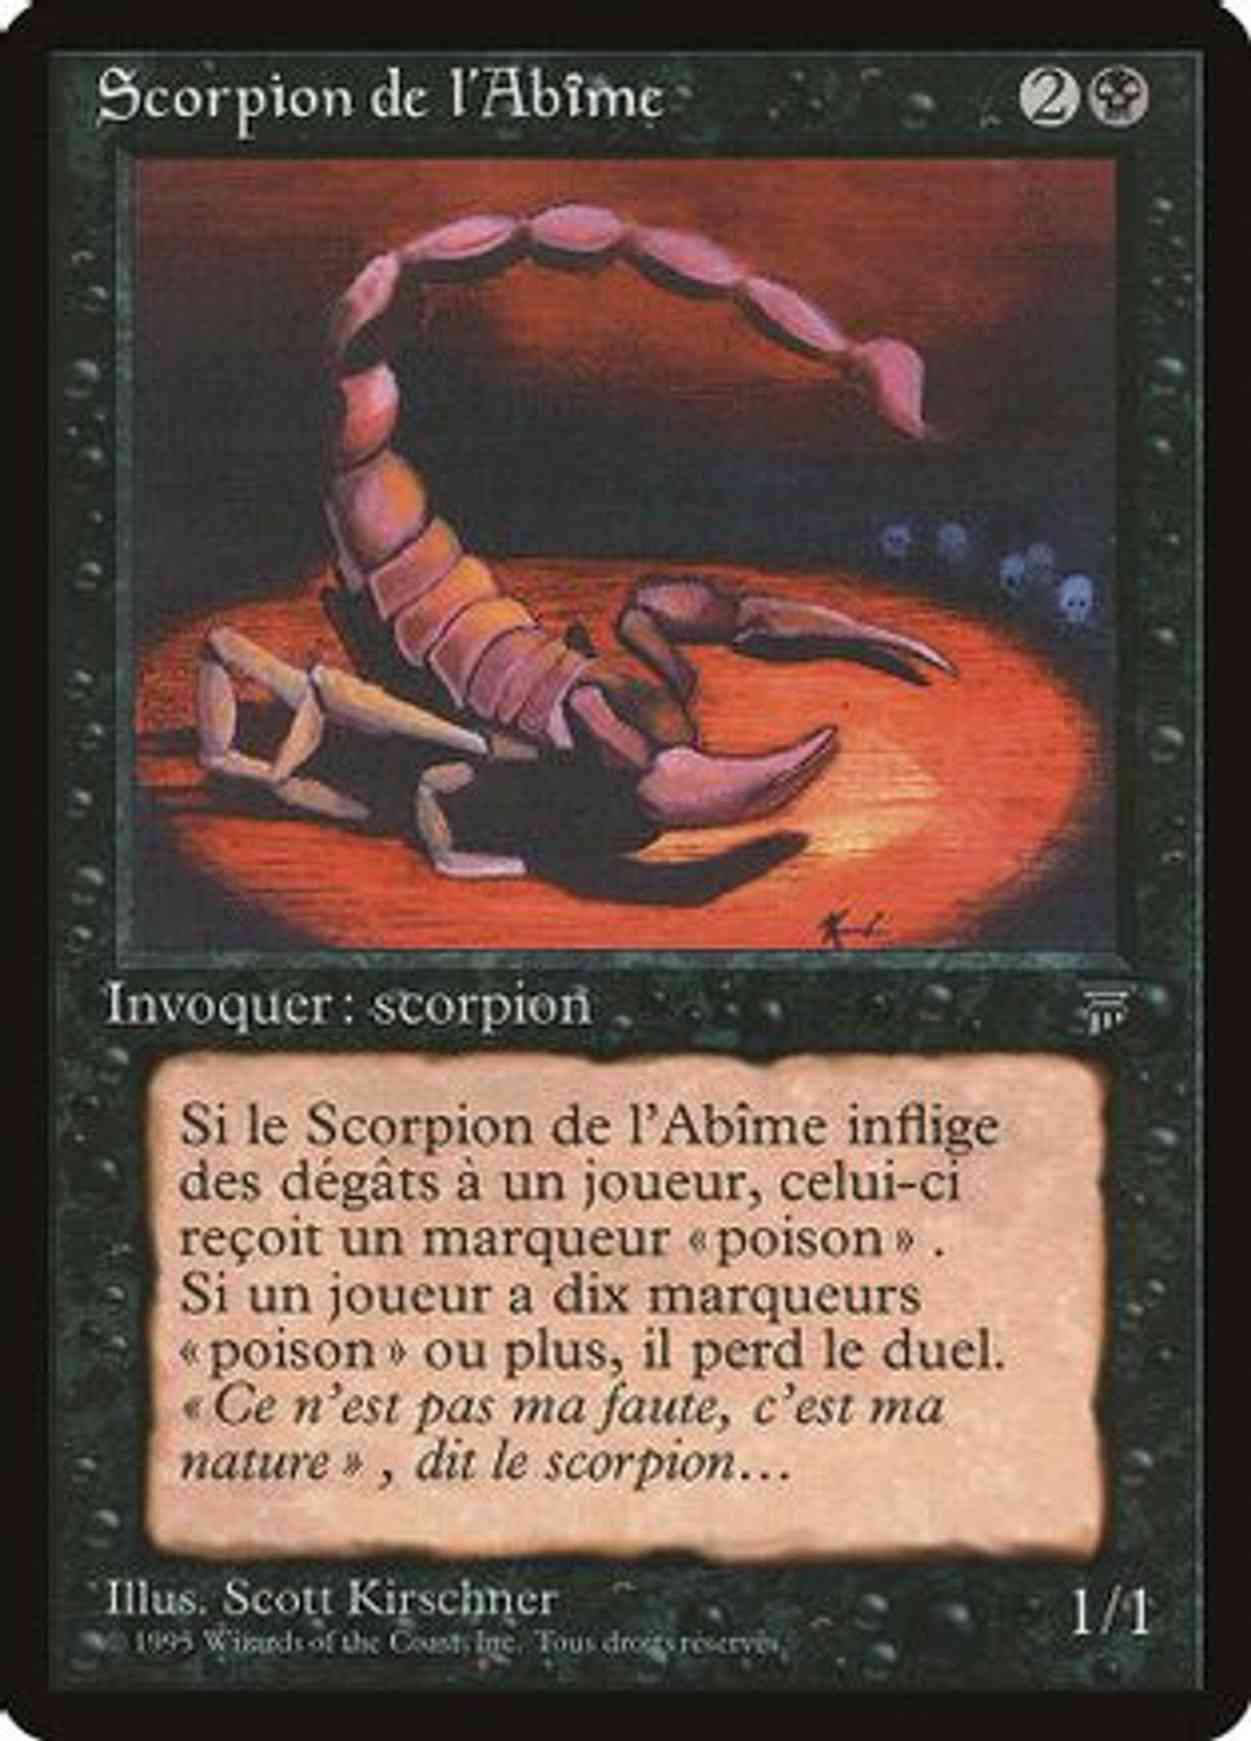 Pit Scorpion (French) - "Scorpion de l'Abime" magic card front